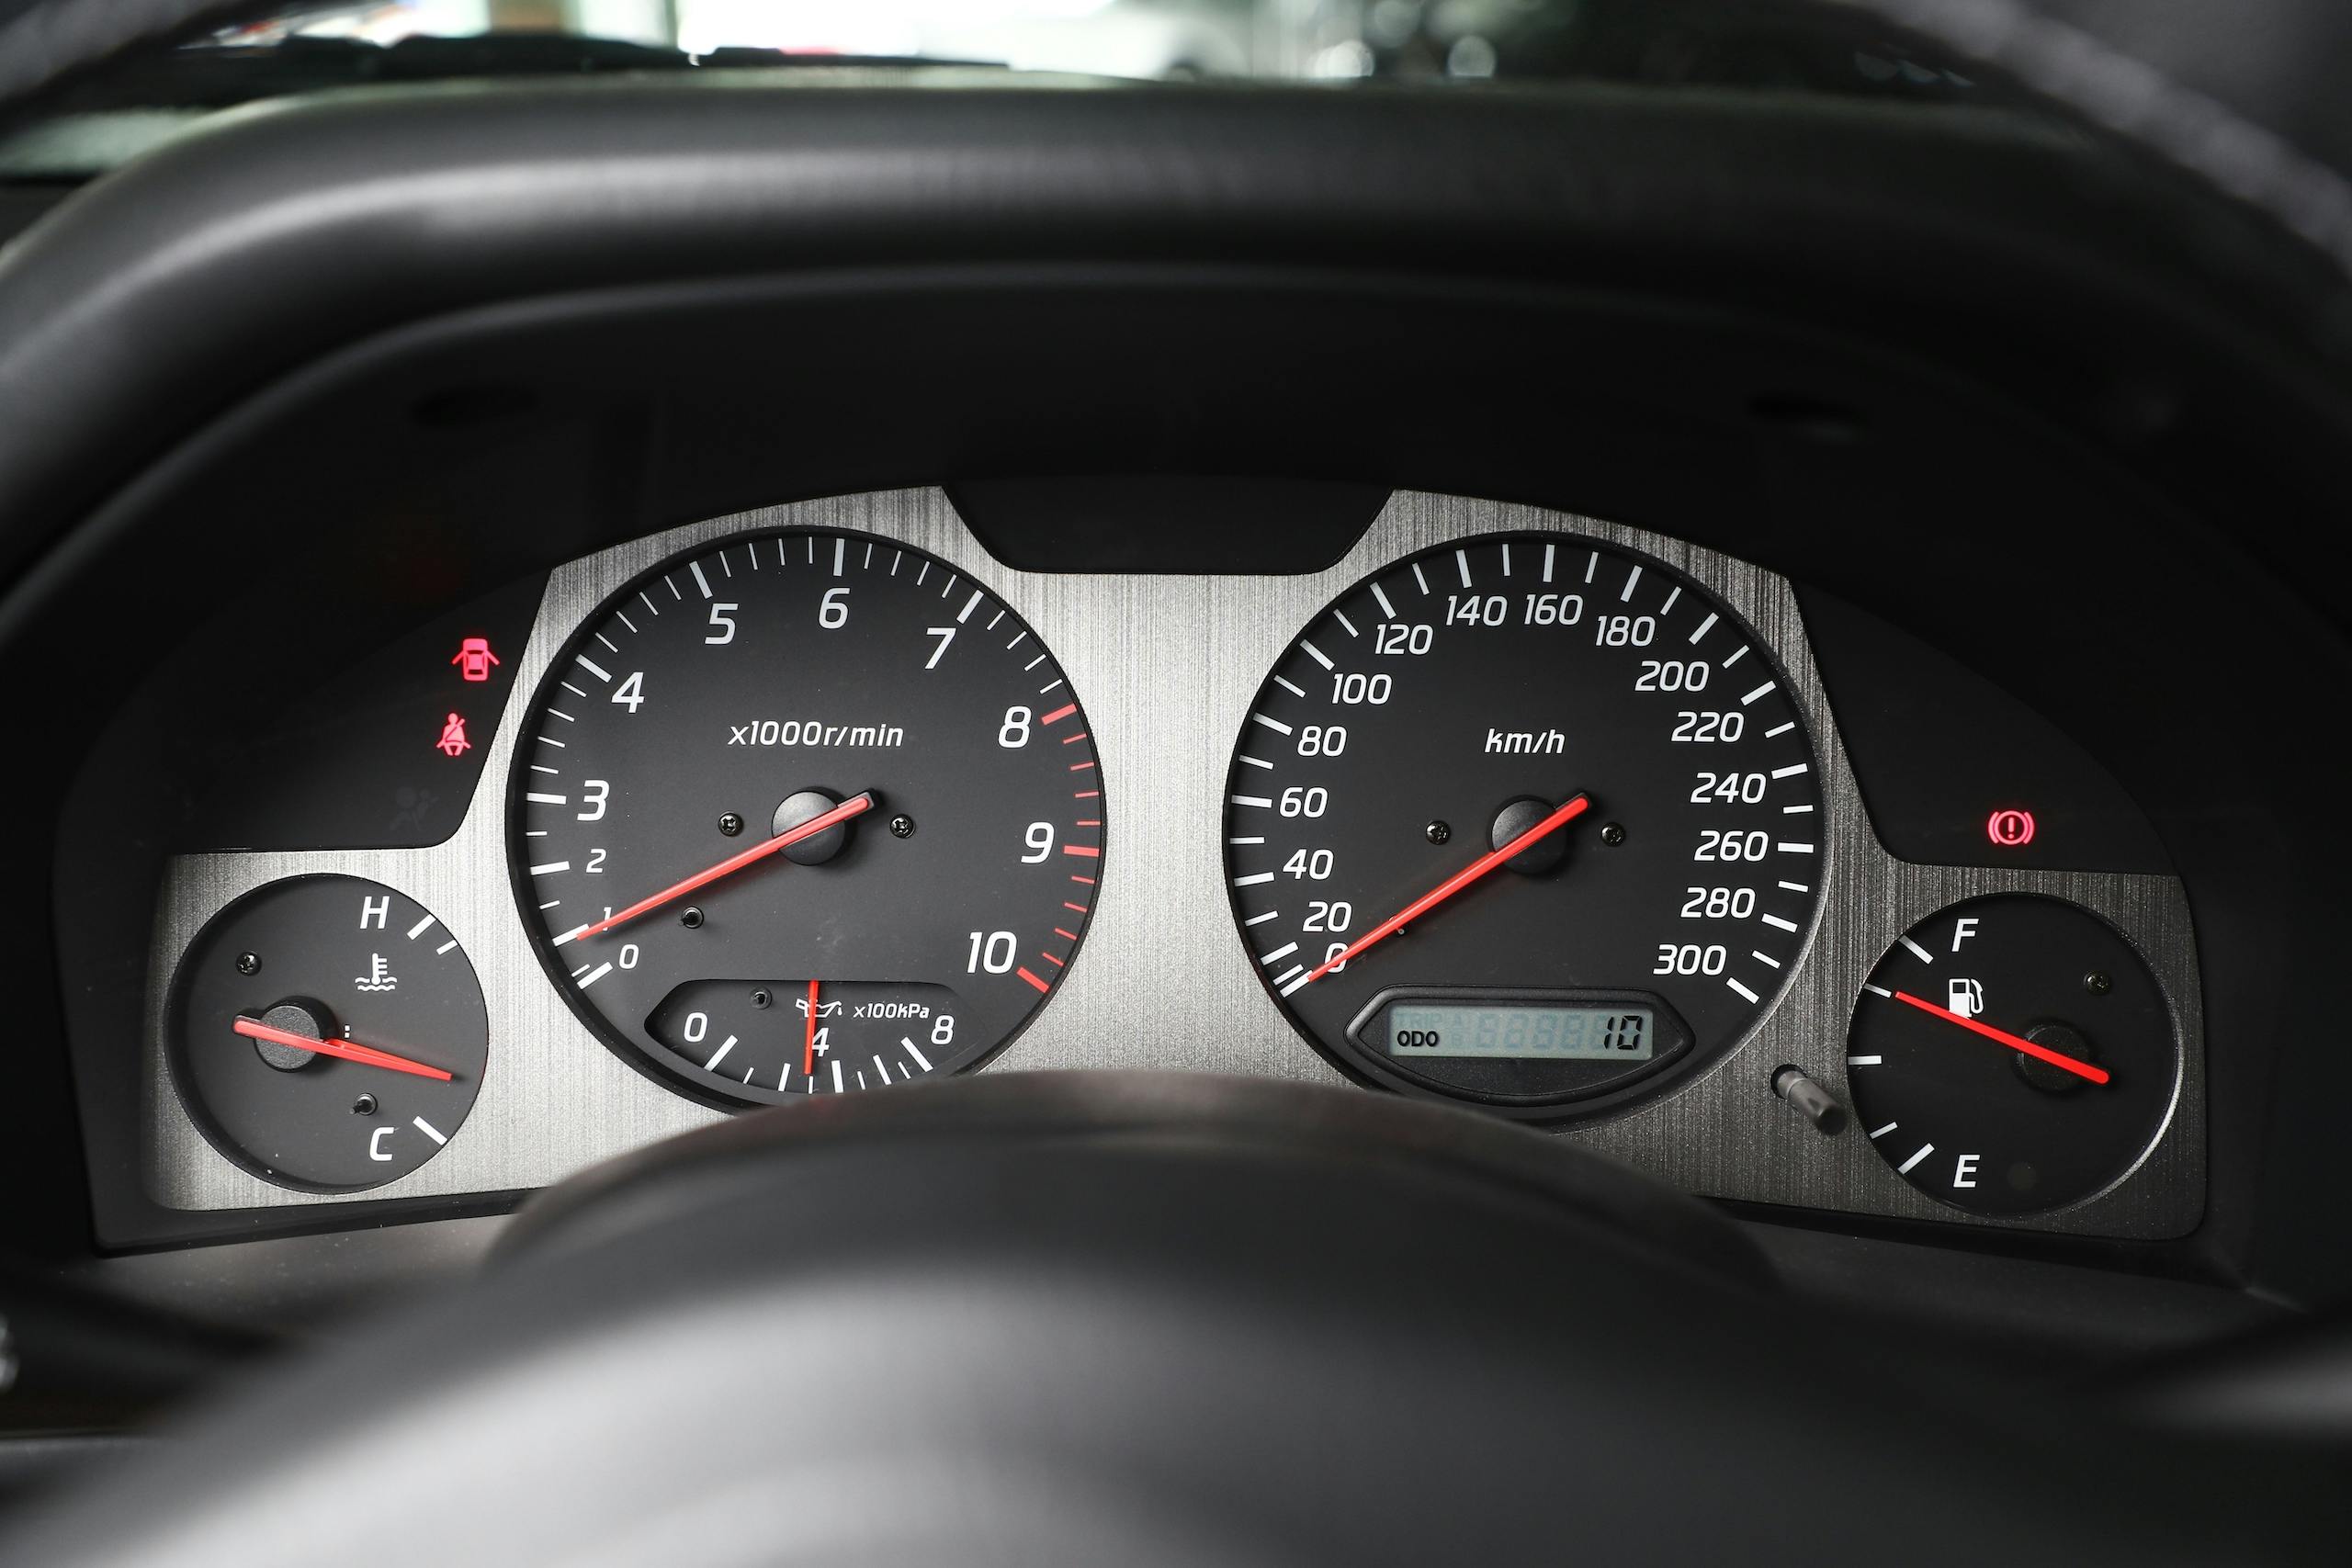 2002 Nissan Skyline GT-R interior dash gauges